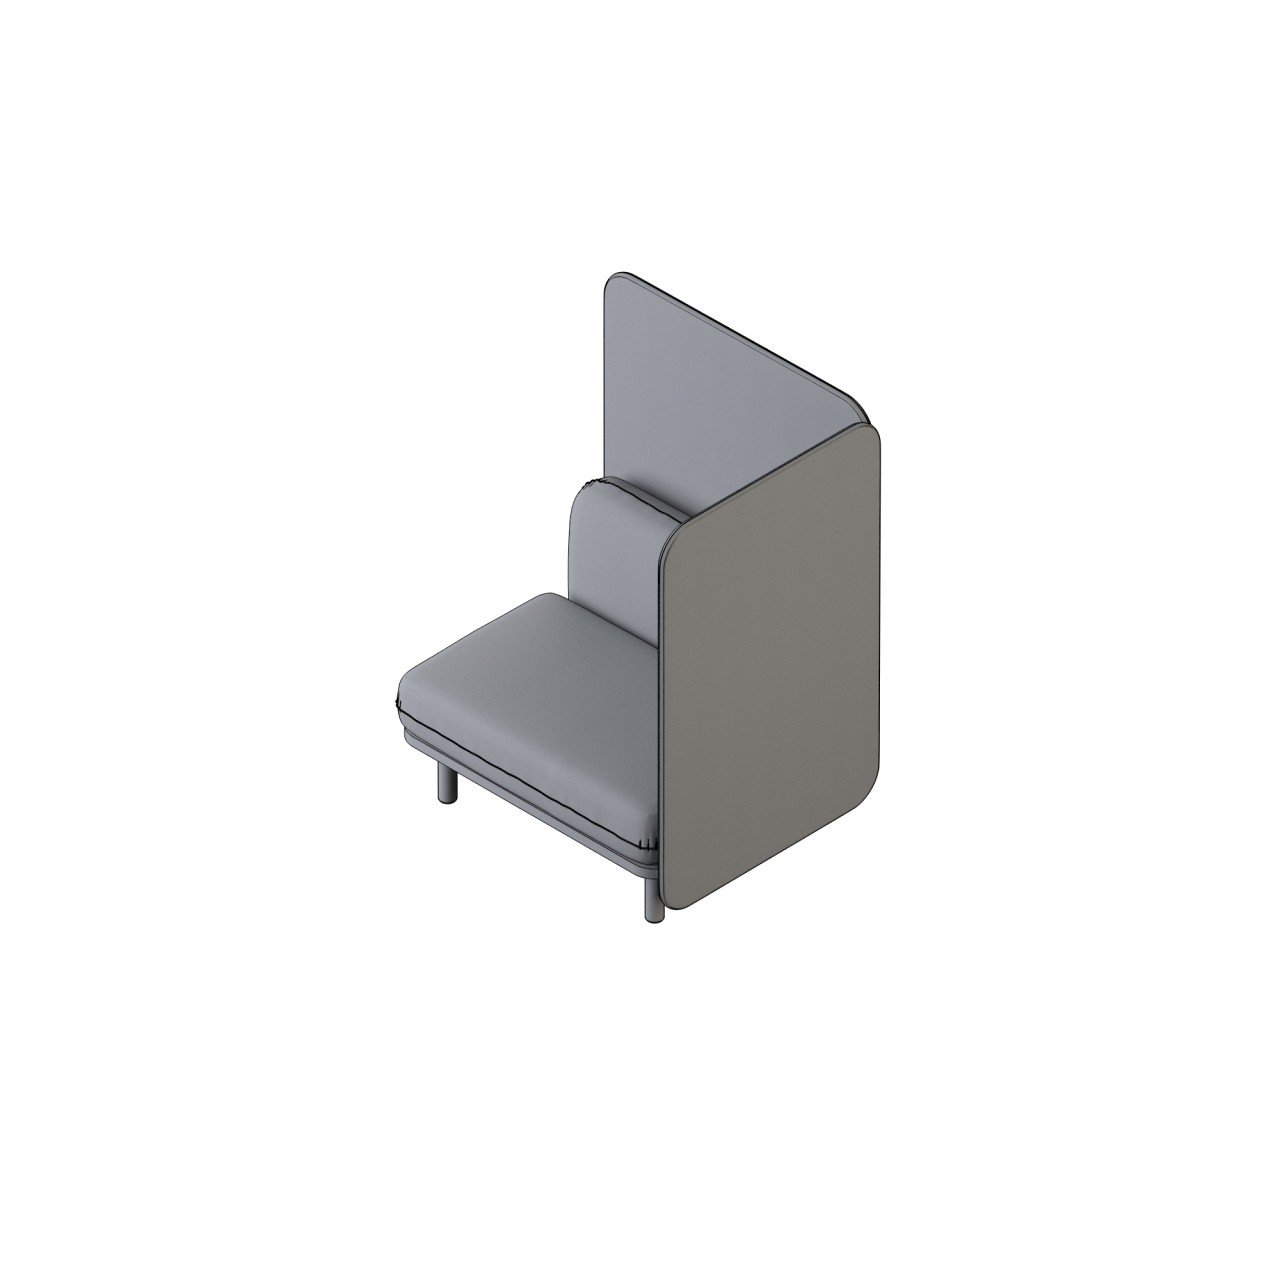 soft - 24003-BL
COM 5
(back 1.75, base 1, seat 2.75, panels, 4.75)